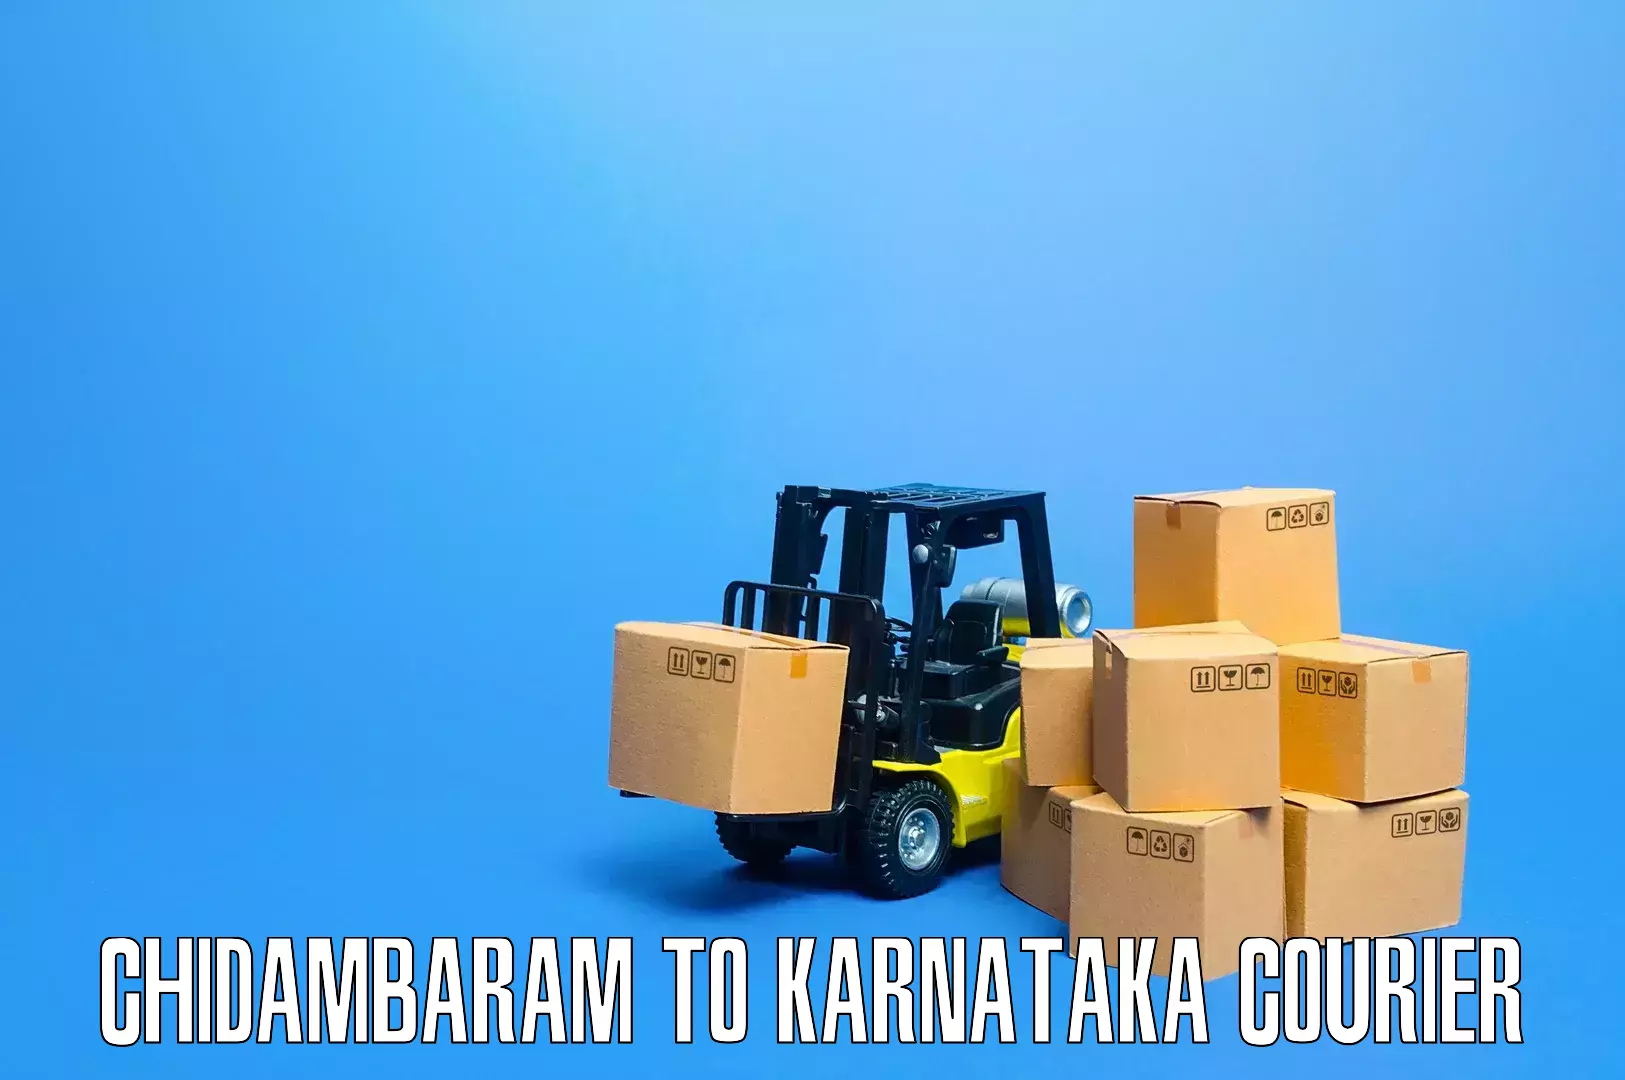 Expert furniture movers Chidambaram to Kulshekar